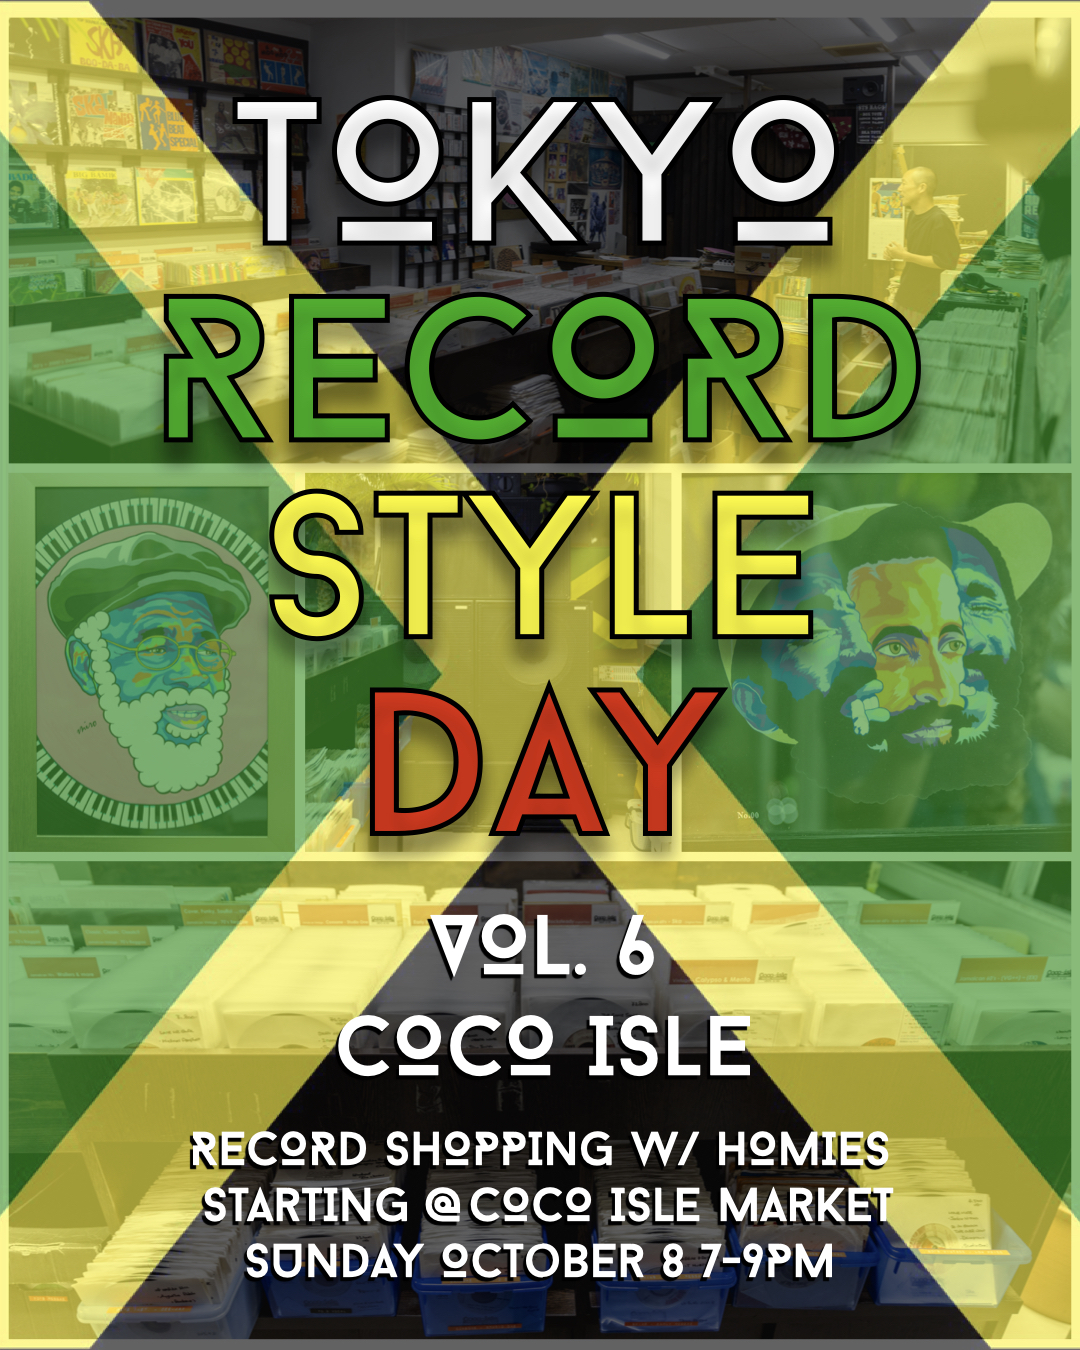 Tokyo Record Store Day Vol. 6 – Coco Isle Music Market